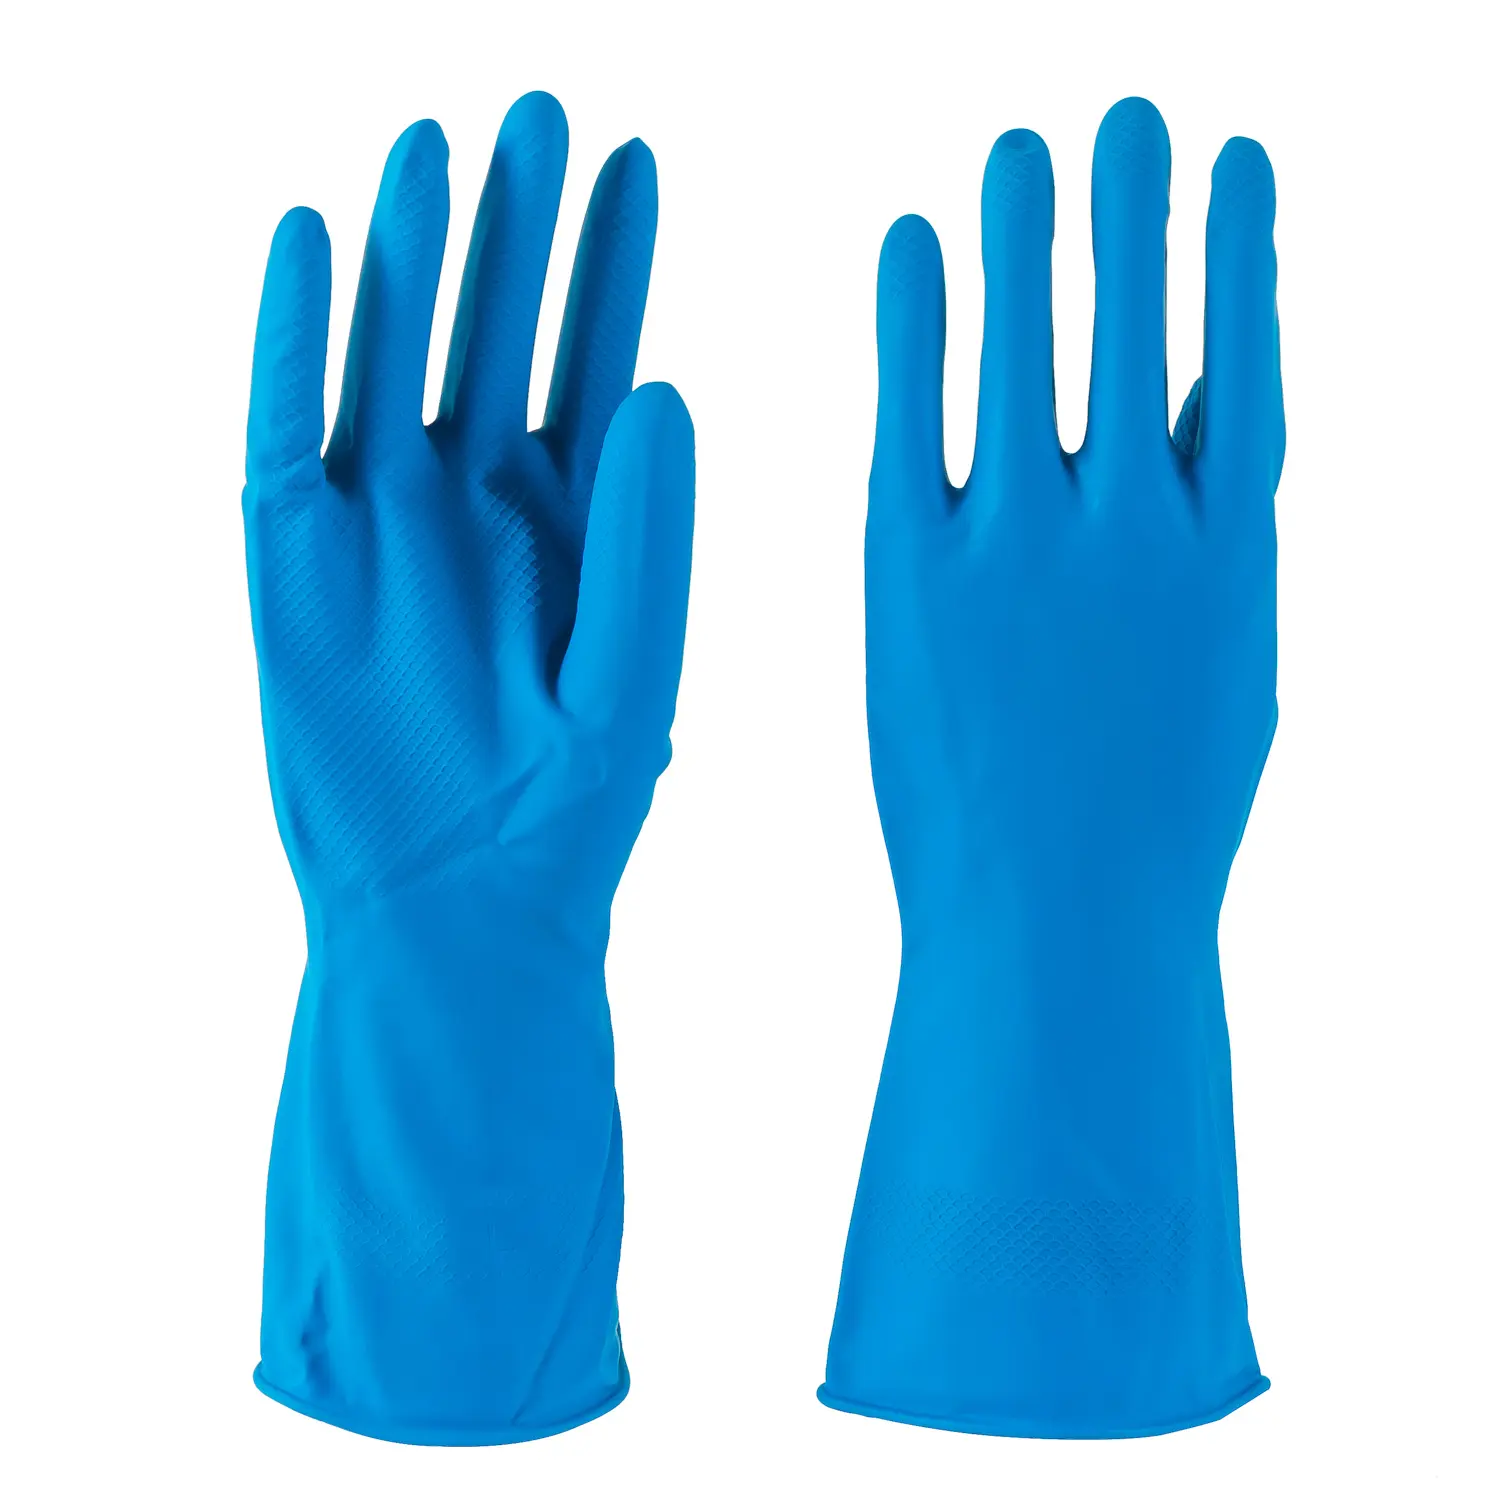 Купить прочные перчатки. Перчатки резиновые latex Industrial Gloves. Перчатки латексные хозяйственные "Gloves" 25пар. Перчатки household Gloves High risk. Перчатки латексные хозяйственные "Gloves" синие р.ХL 1/25пар.